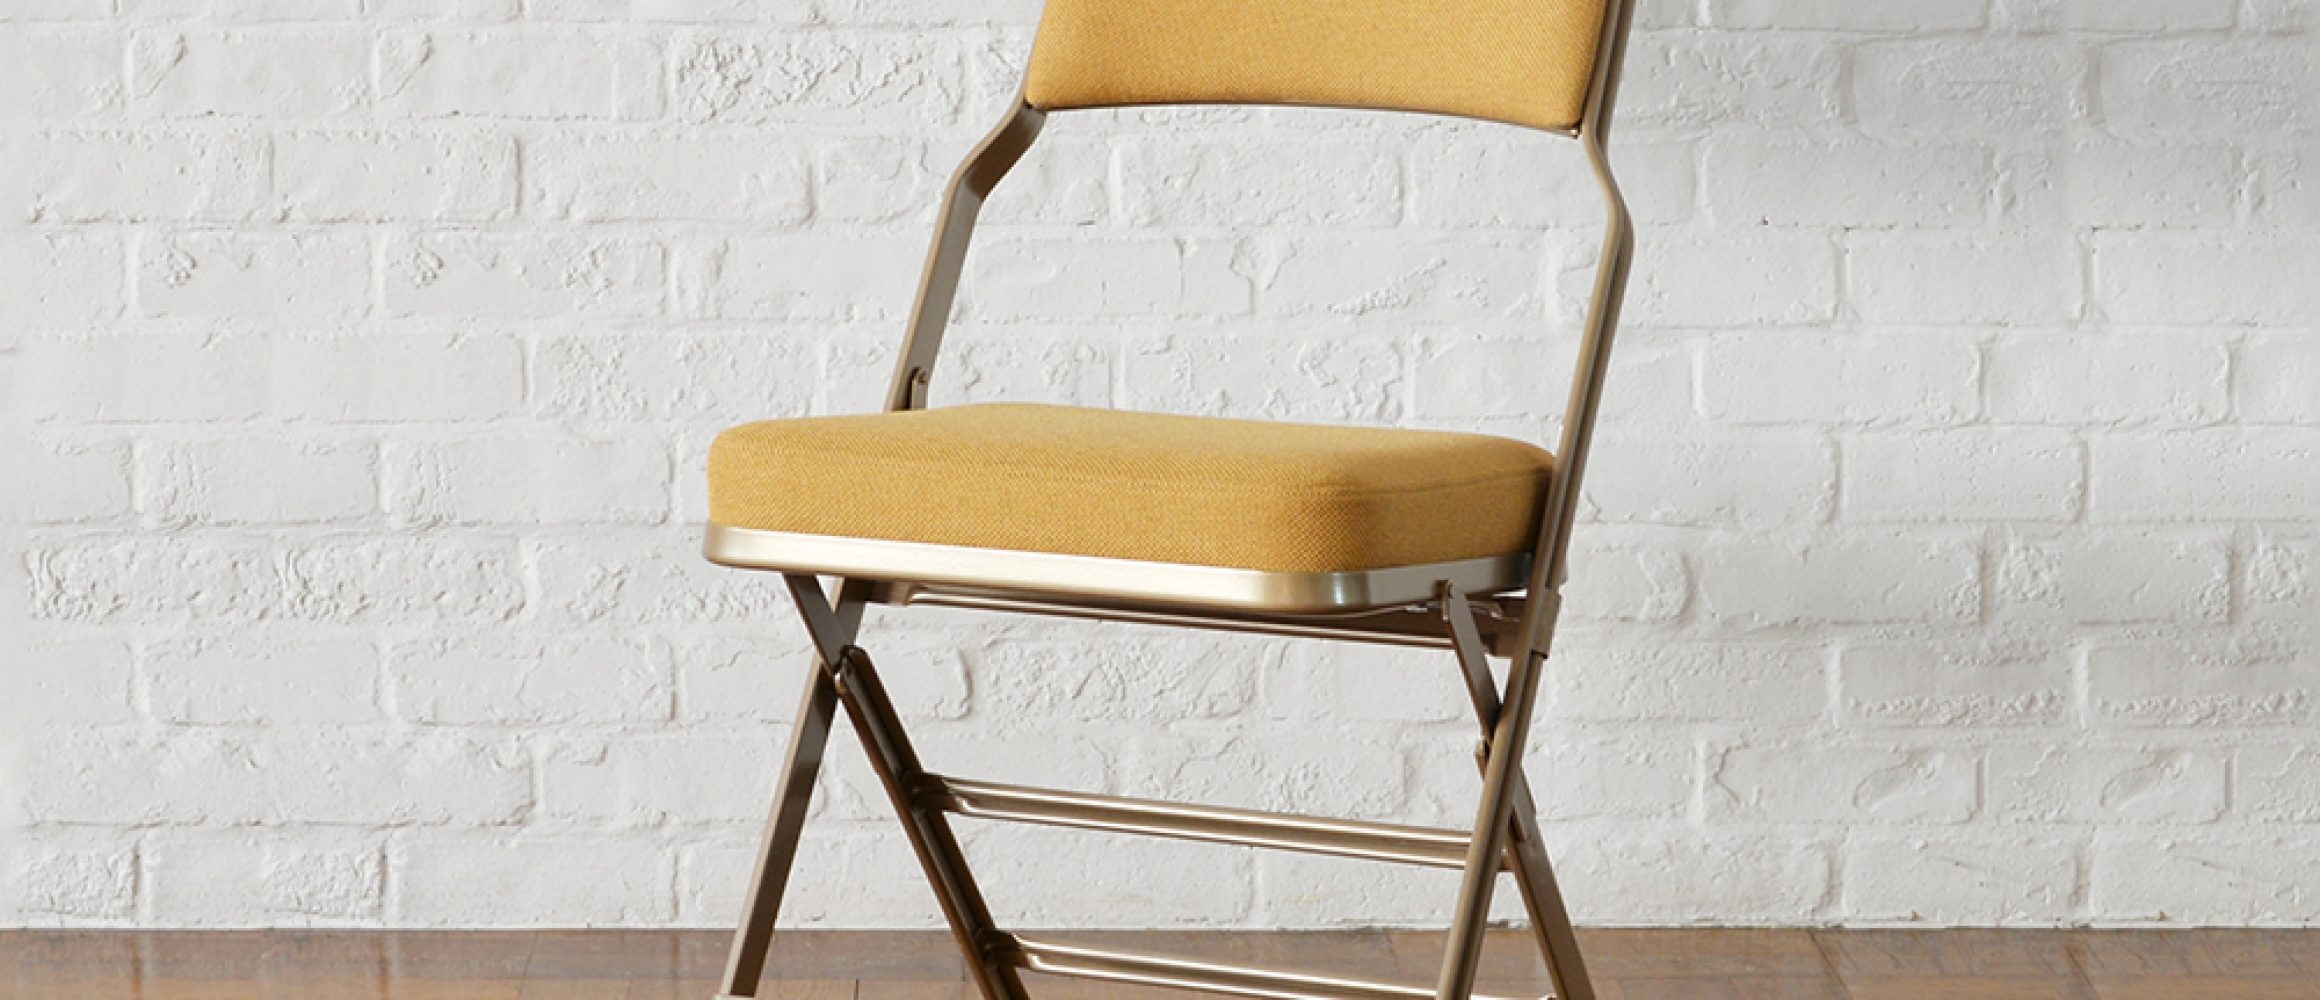 いわば極上のパイプ椅子。フレームクッションにこだわった、PFSの芸術的折り畳みチェア。 | アウトドアファッションのGO OUT